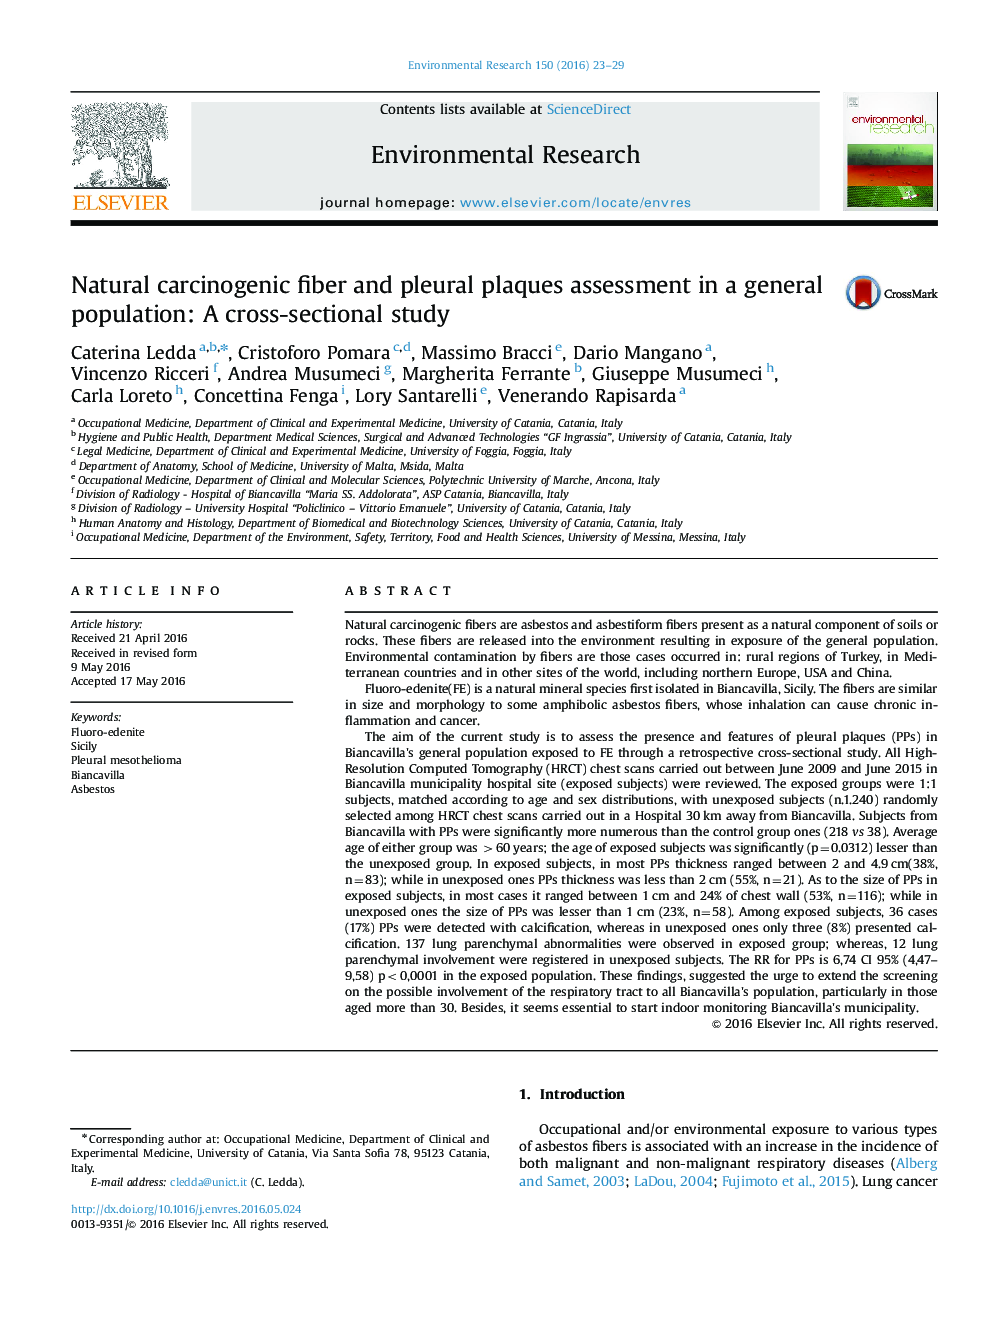 ارزیابی فیبرهای طبیعی سرطان زا و پلاک در جمعیت عمومی: یک مطالعه مقطعی 